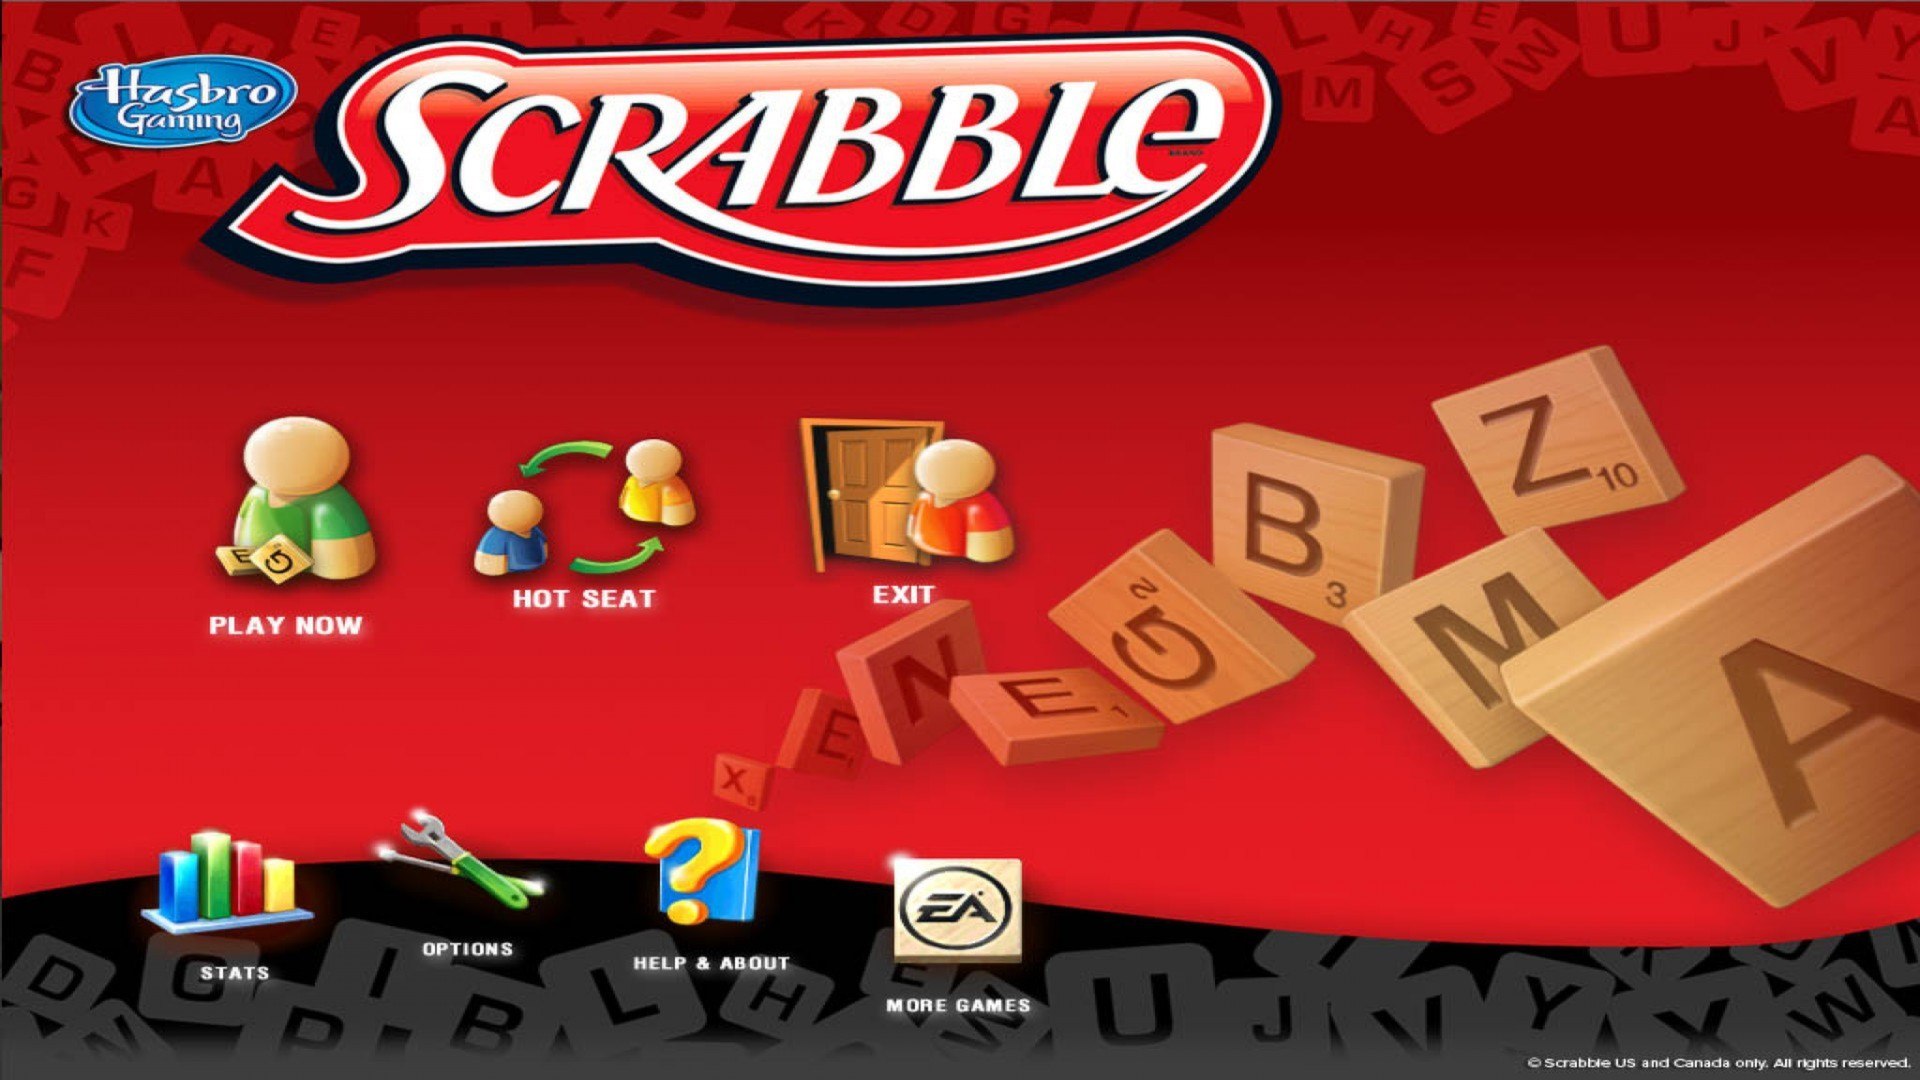 Scrabble Steam Gift [USD 564.97]